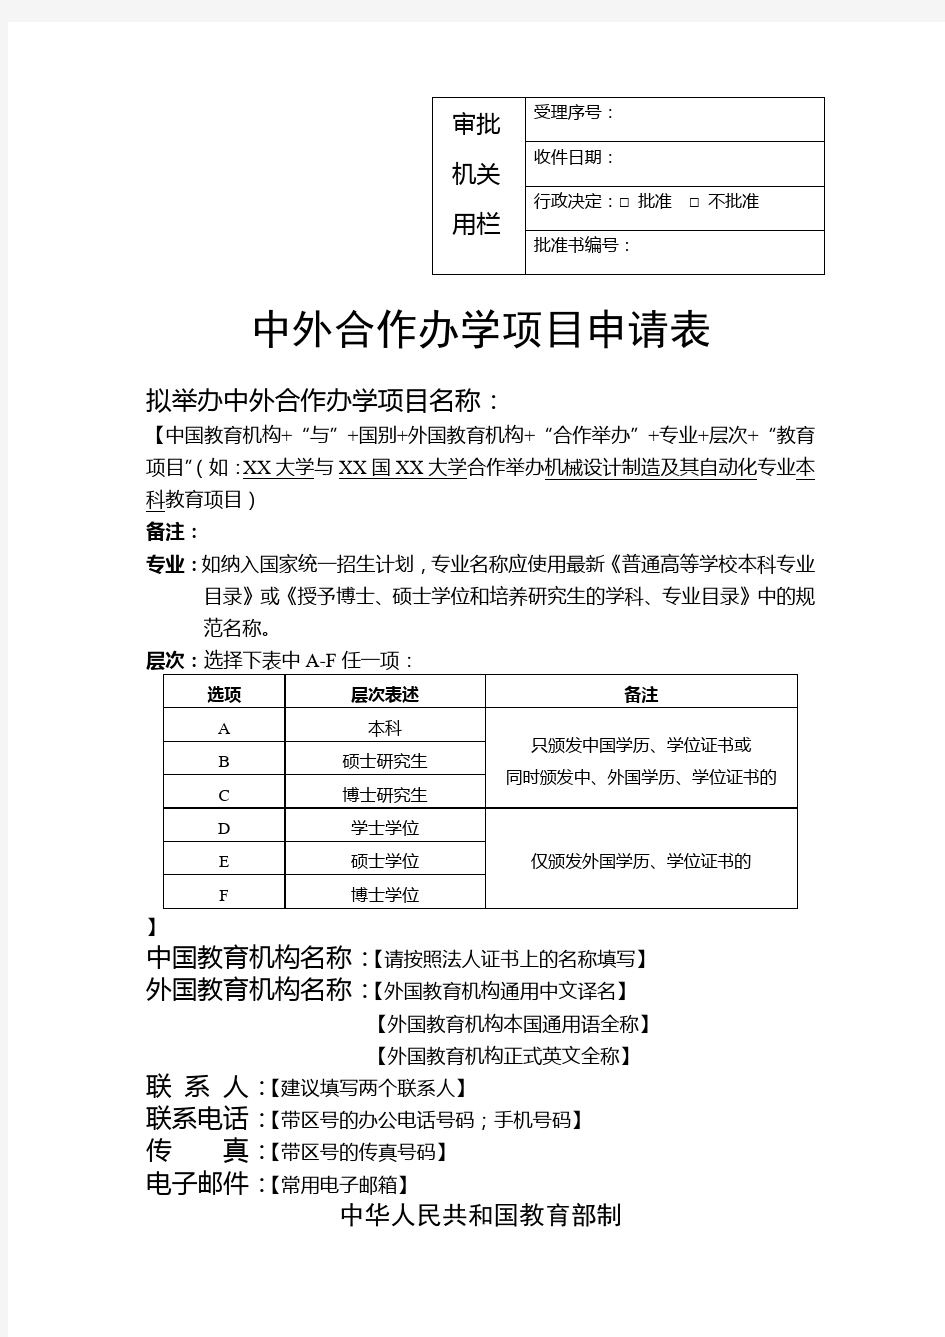 中外合作办学项目申请表填写-北京大学国际合作部